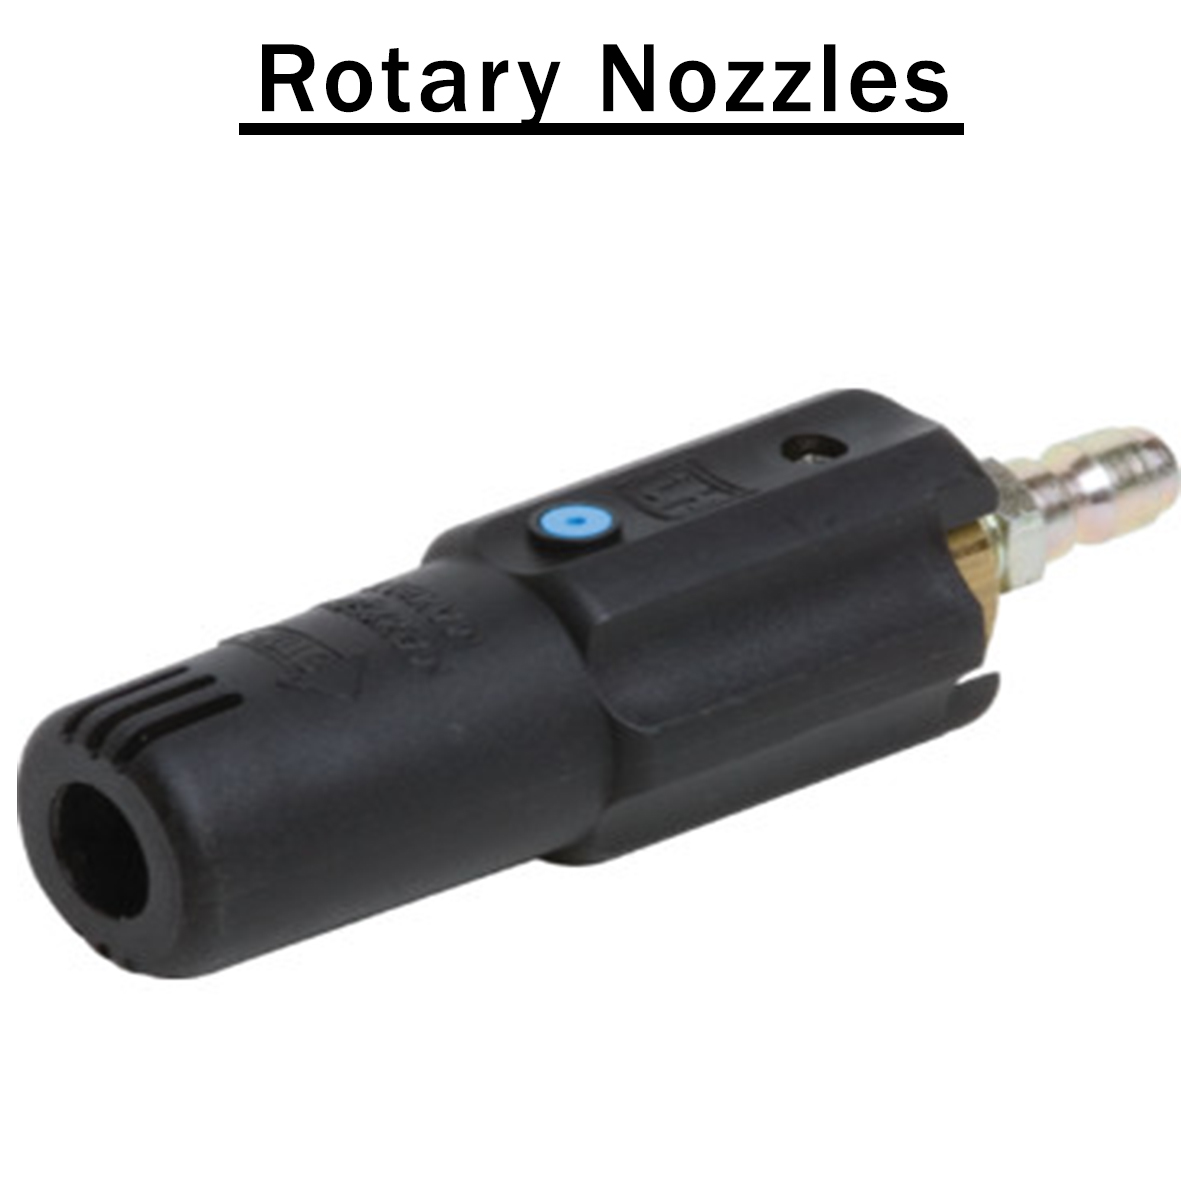 Rotary Nozzles